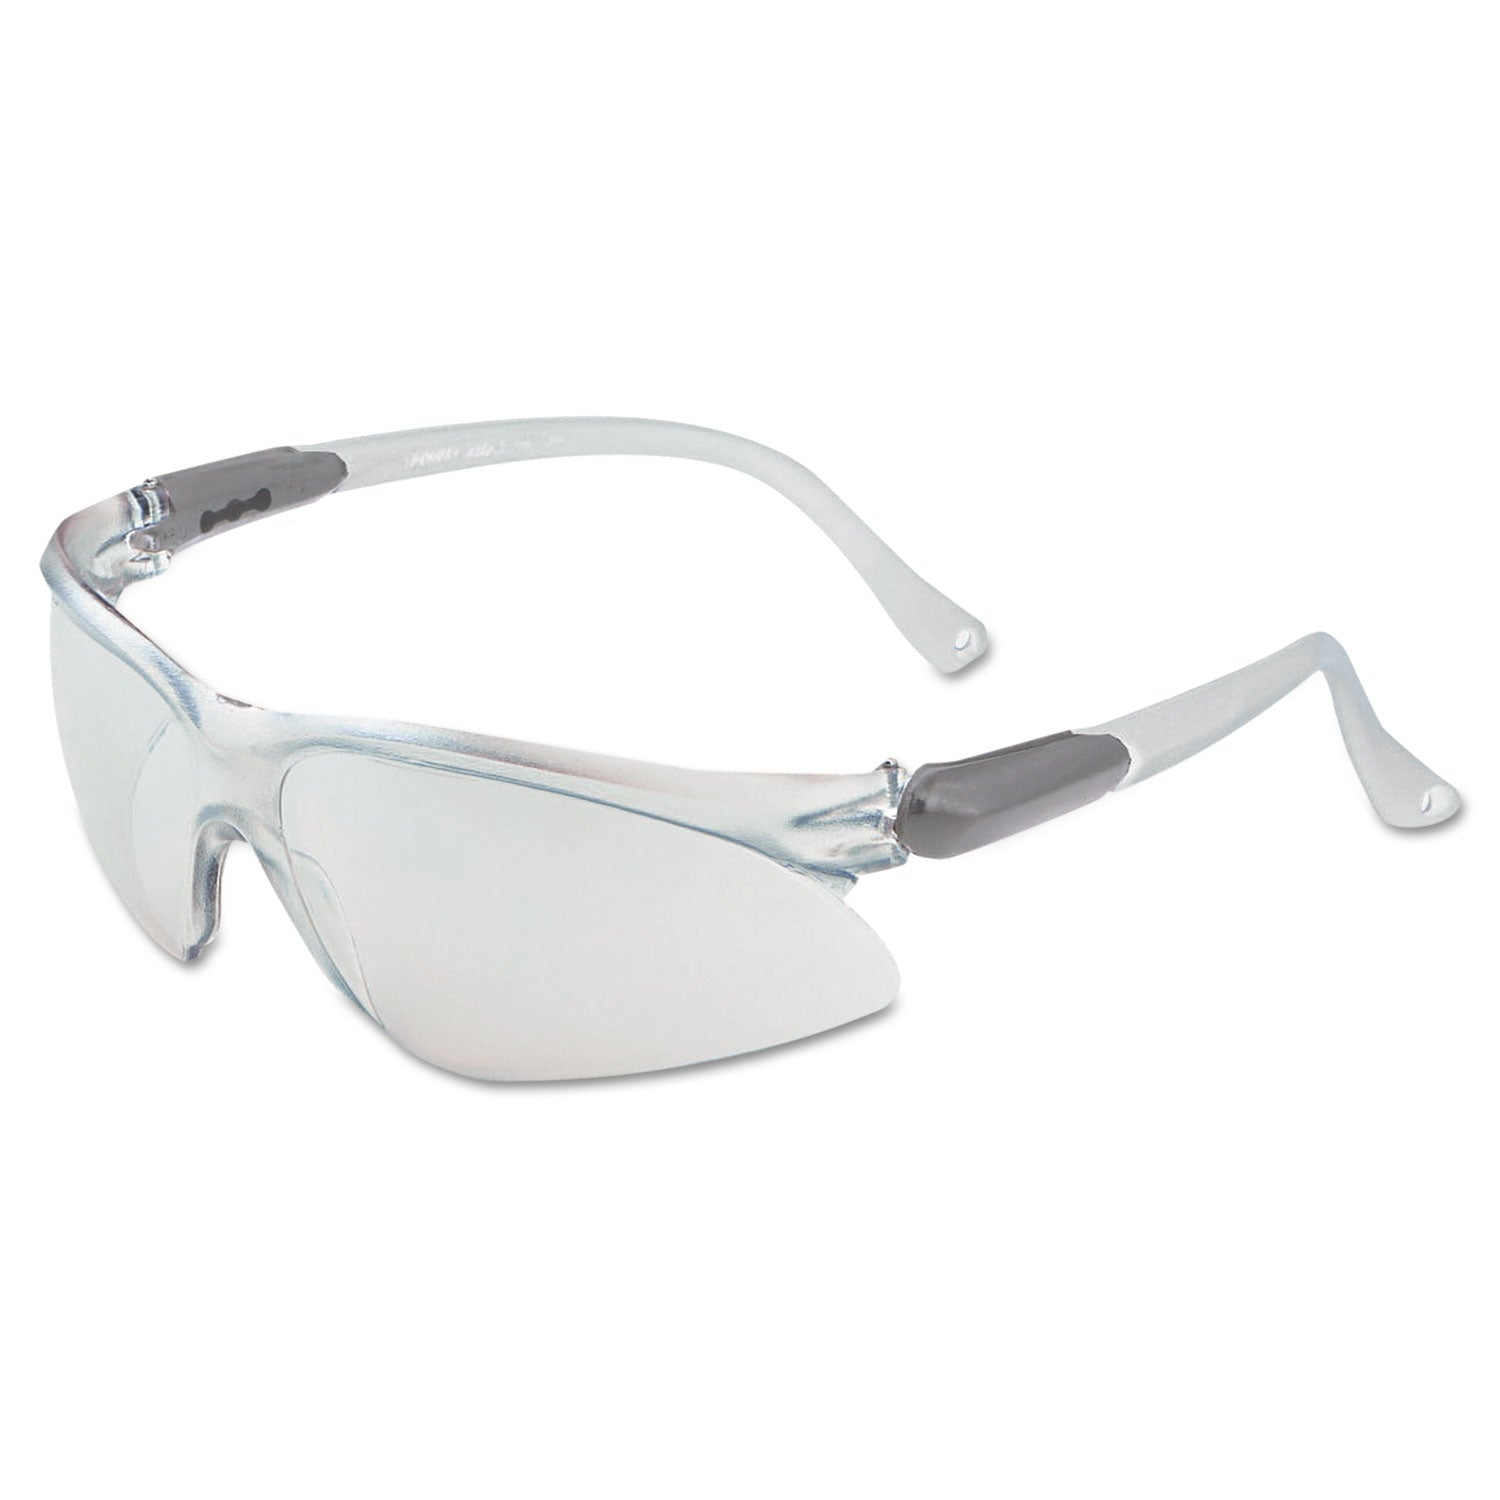 v20-visio-safety-eyewear-clear-lens-foggard-plus_kcc14471 - 2